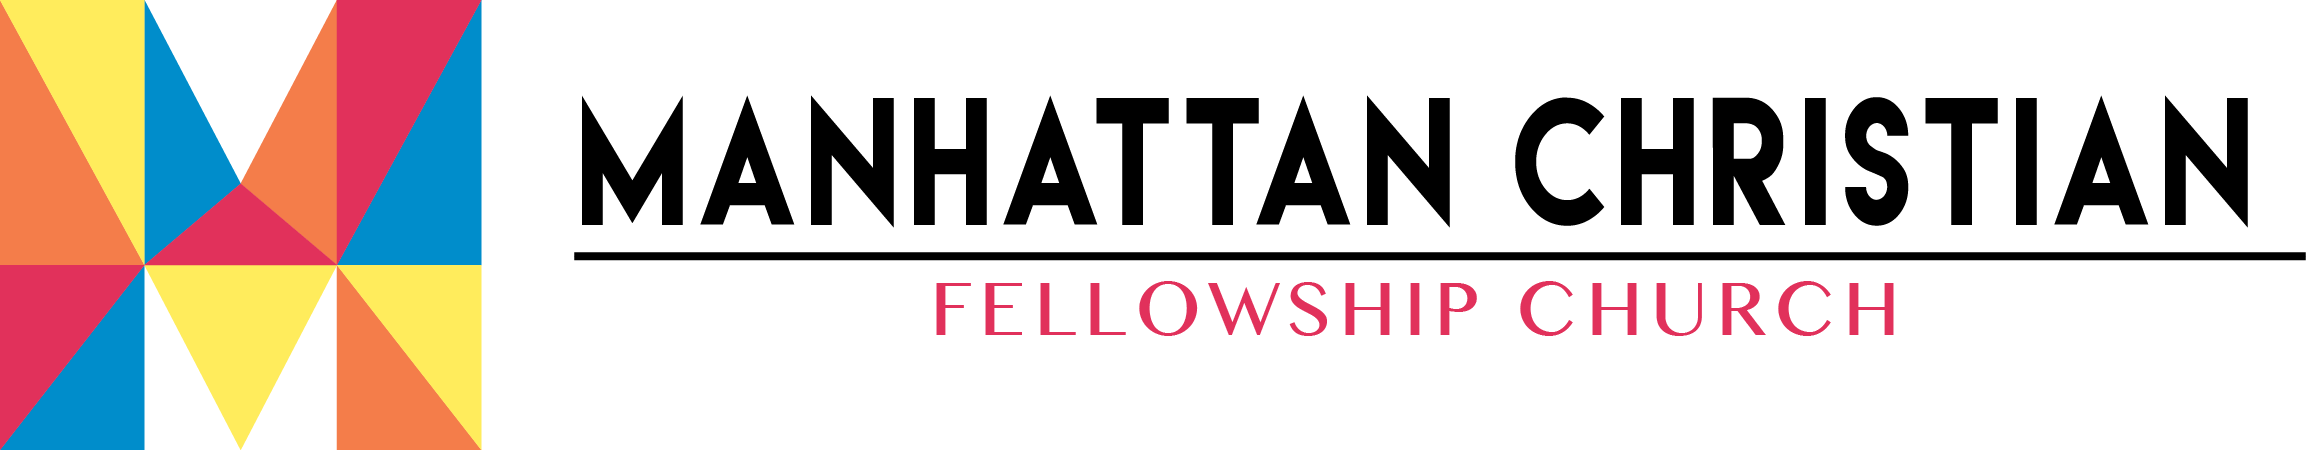 Manhattan Christian Fellowship Church